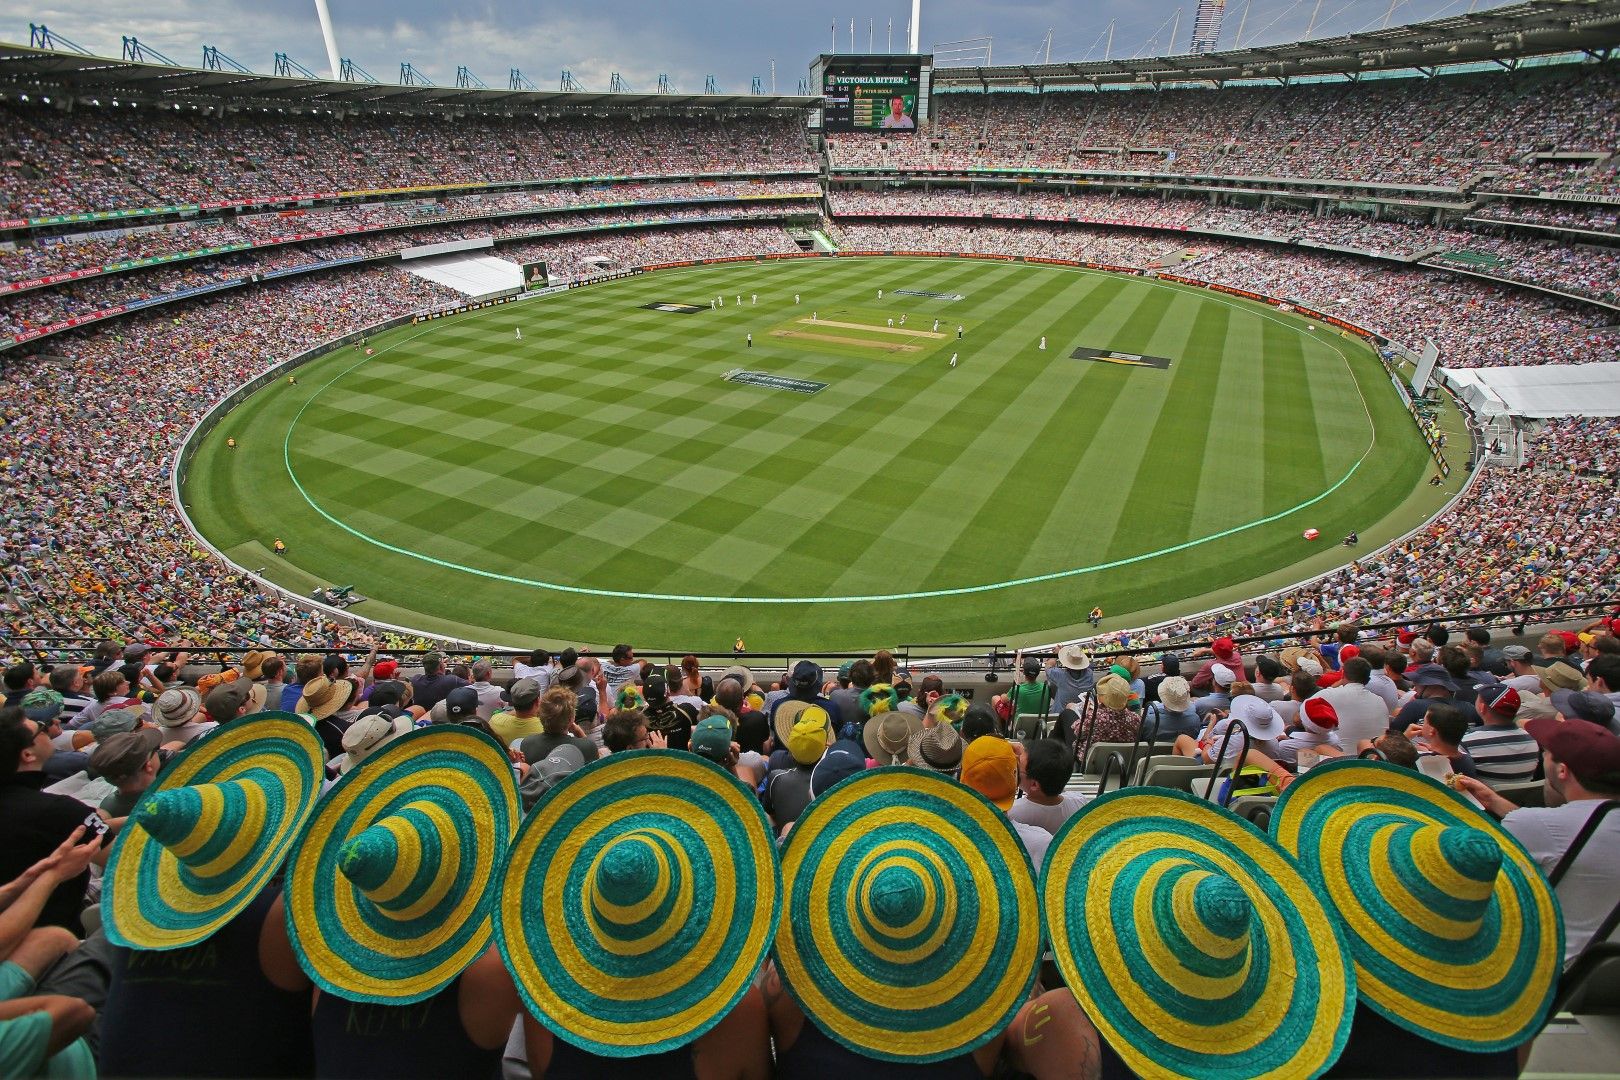 "Мелбърн Крикет Граунд" е най-големият стадион, посветен на крикета. Събира 100 хиляди души и е дом на осем отбора по крикет и австралийски футбол (разновидност на ръгбито). Той е един от най-старите в света, отворен през 1853-а. Крикетът е един от най-старите спортове все пак.